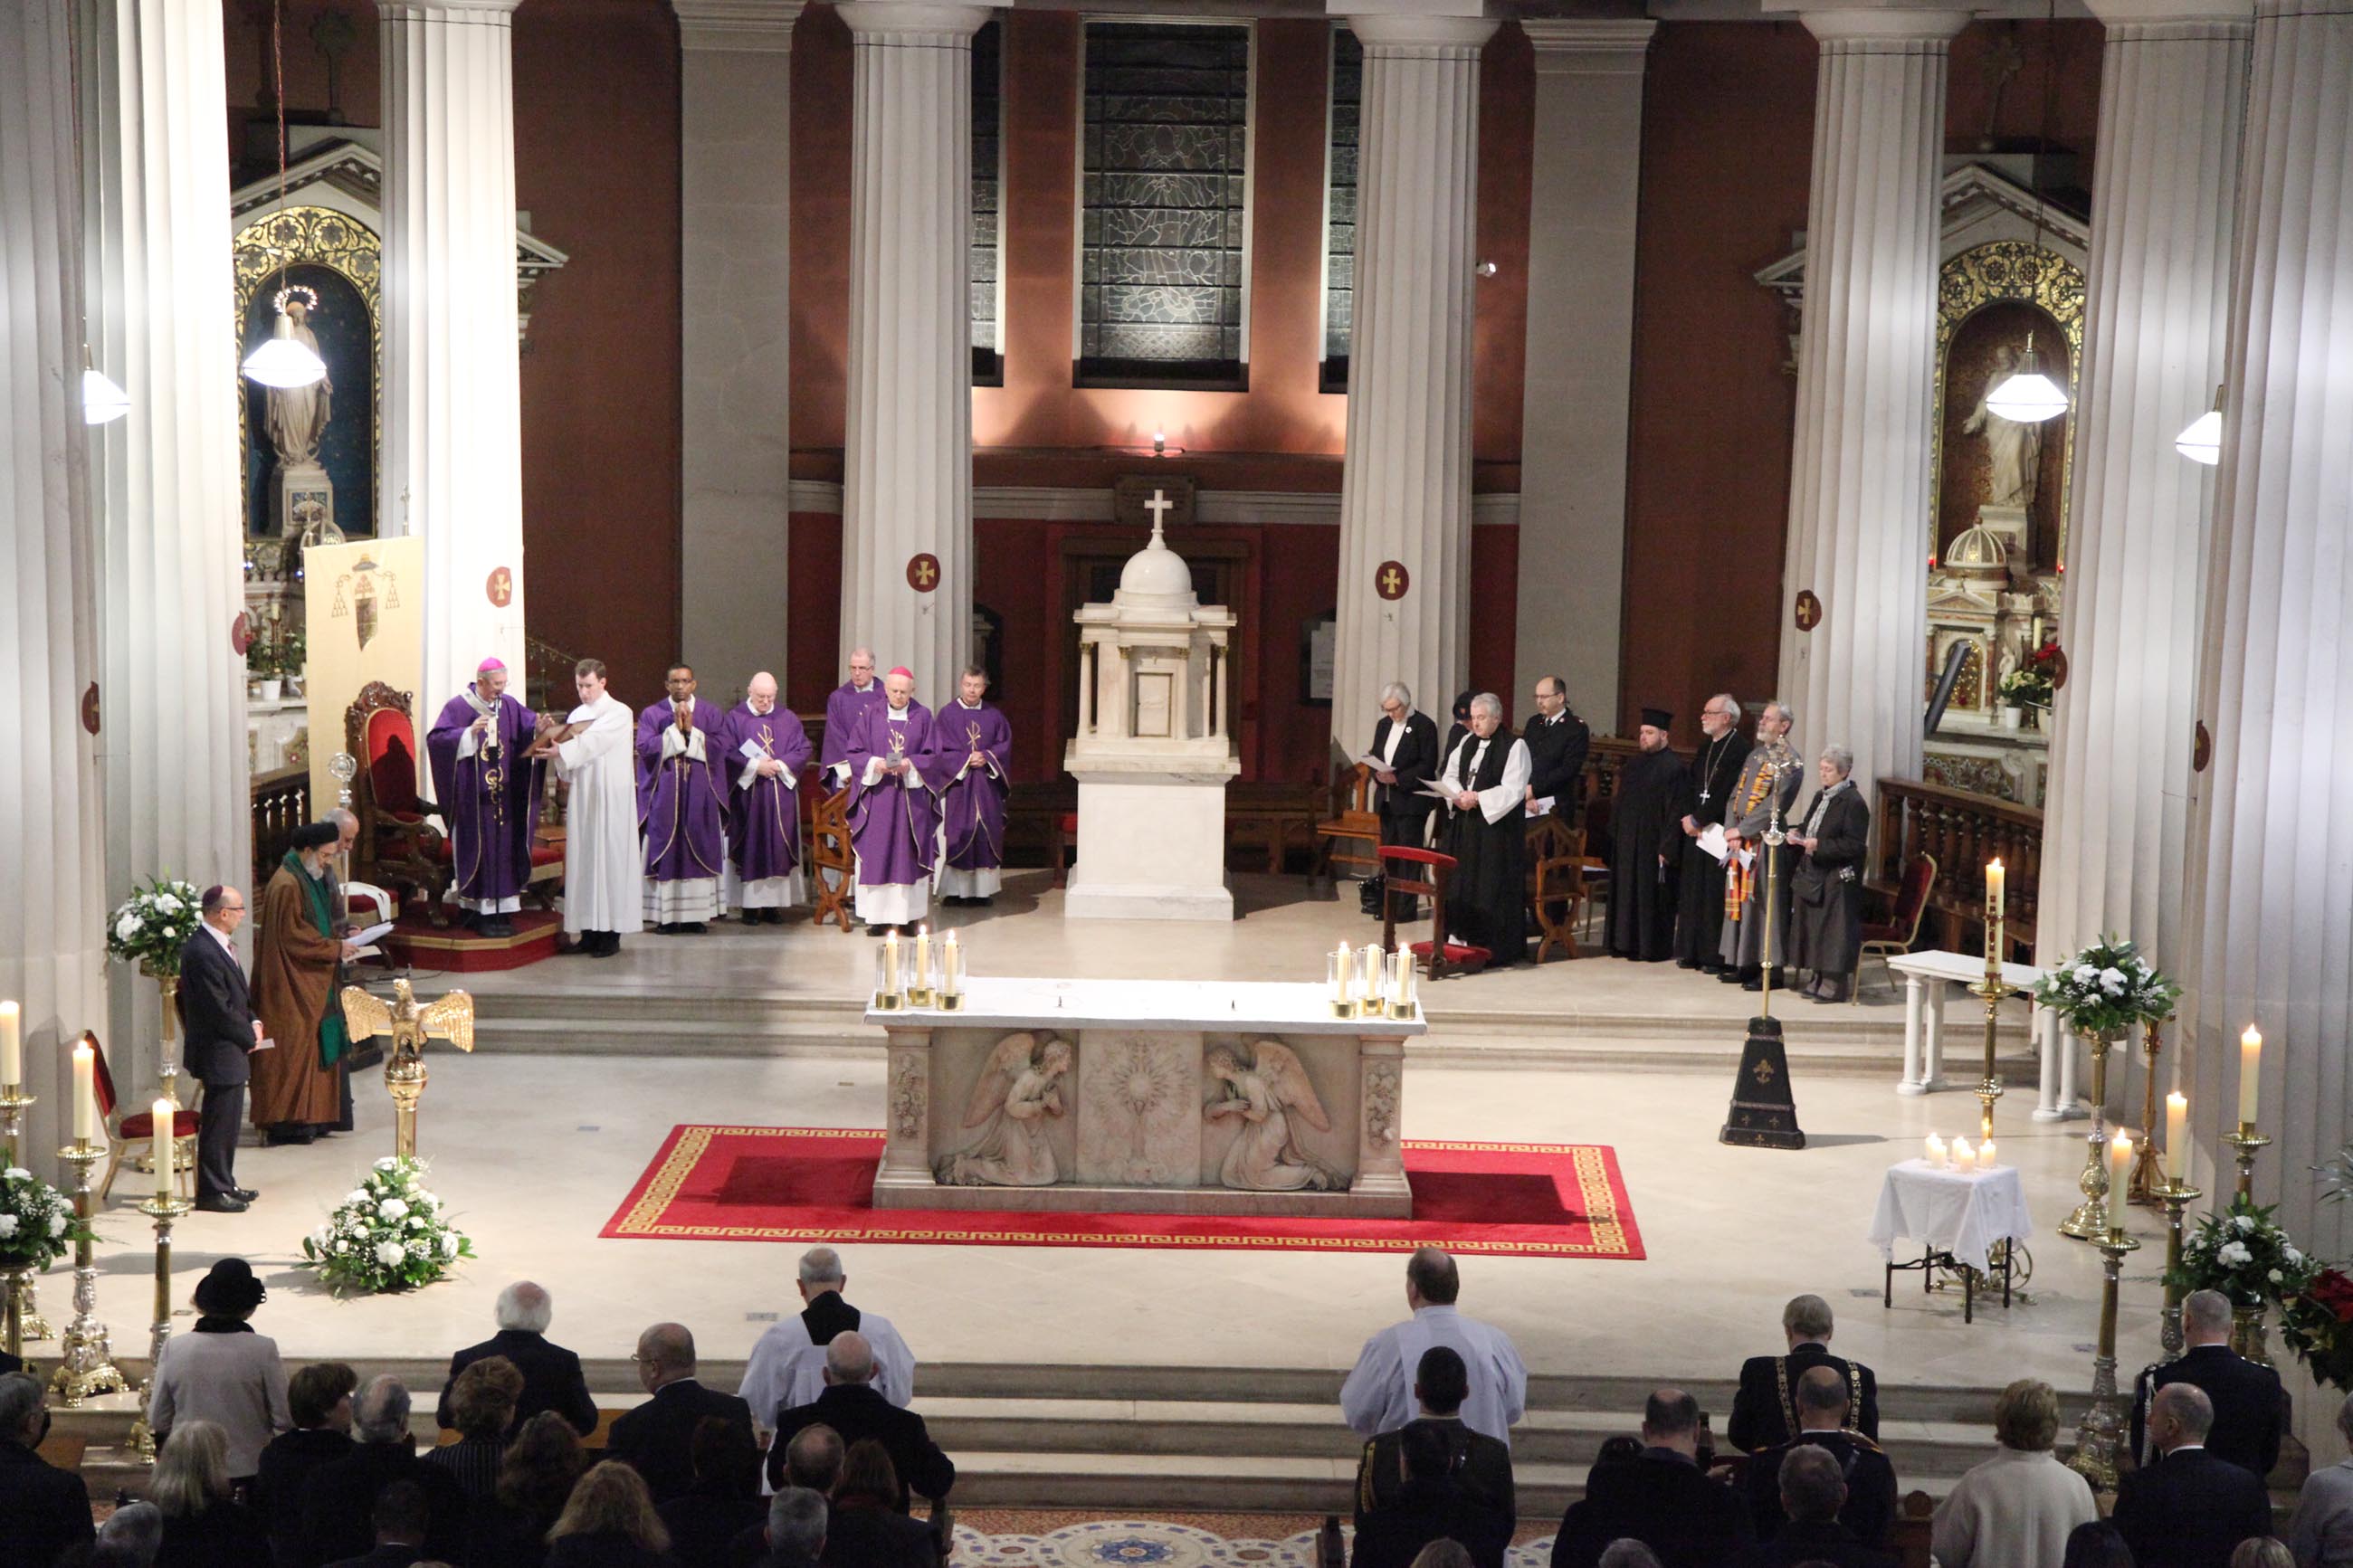 Mass for Paris victims